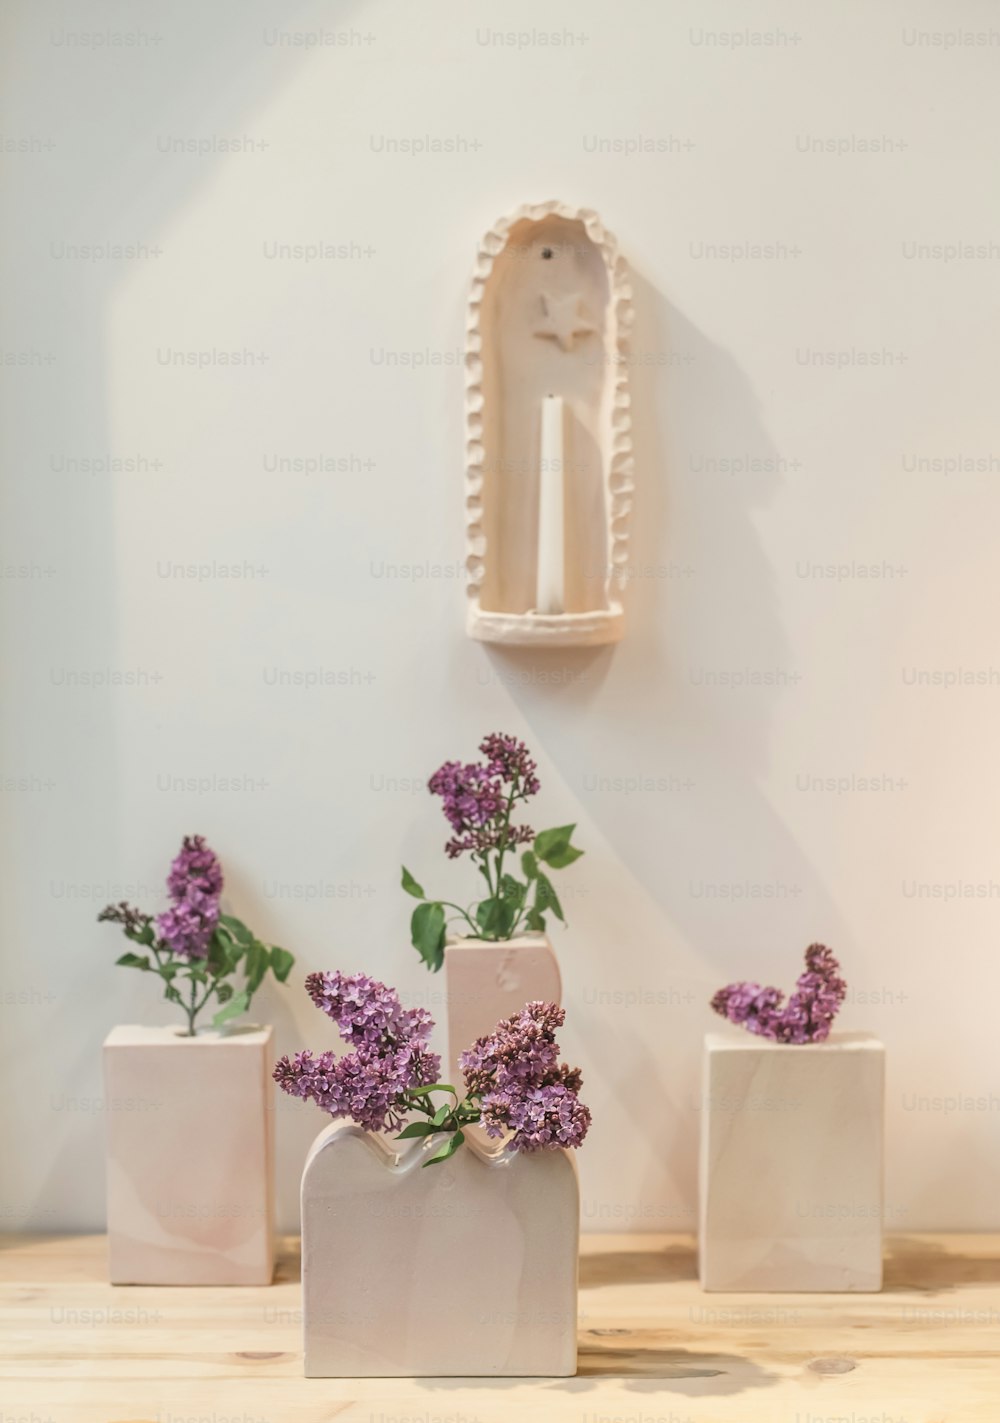 tre vasi bianchi con fiori viola in essi